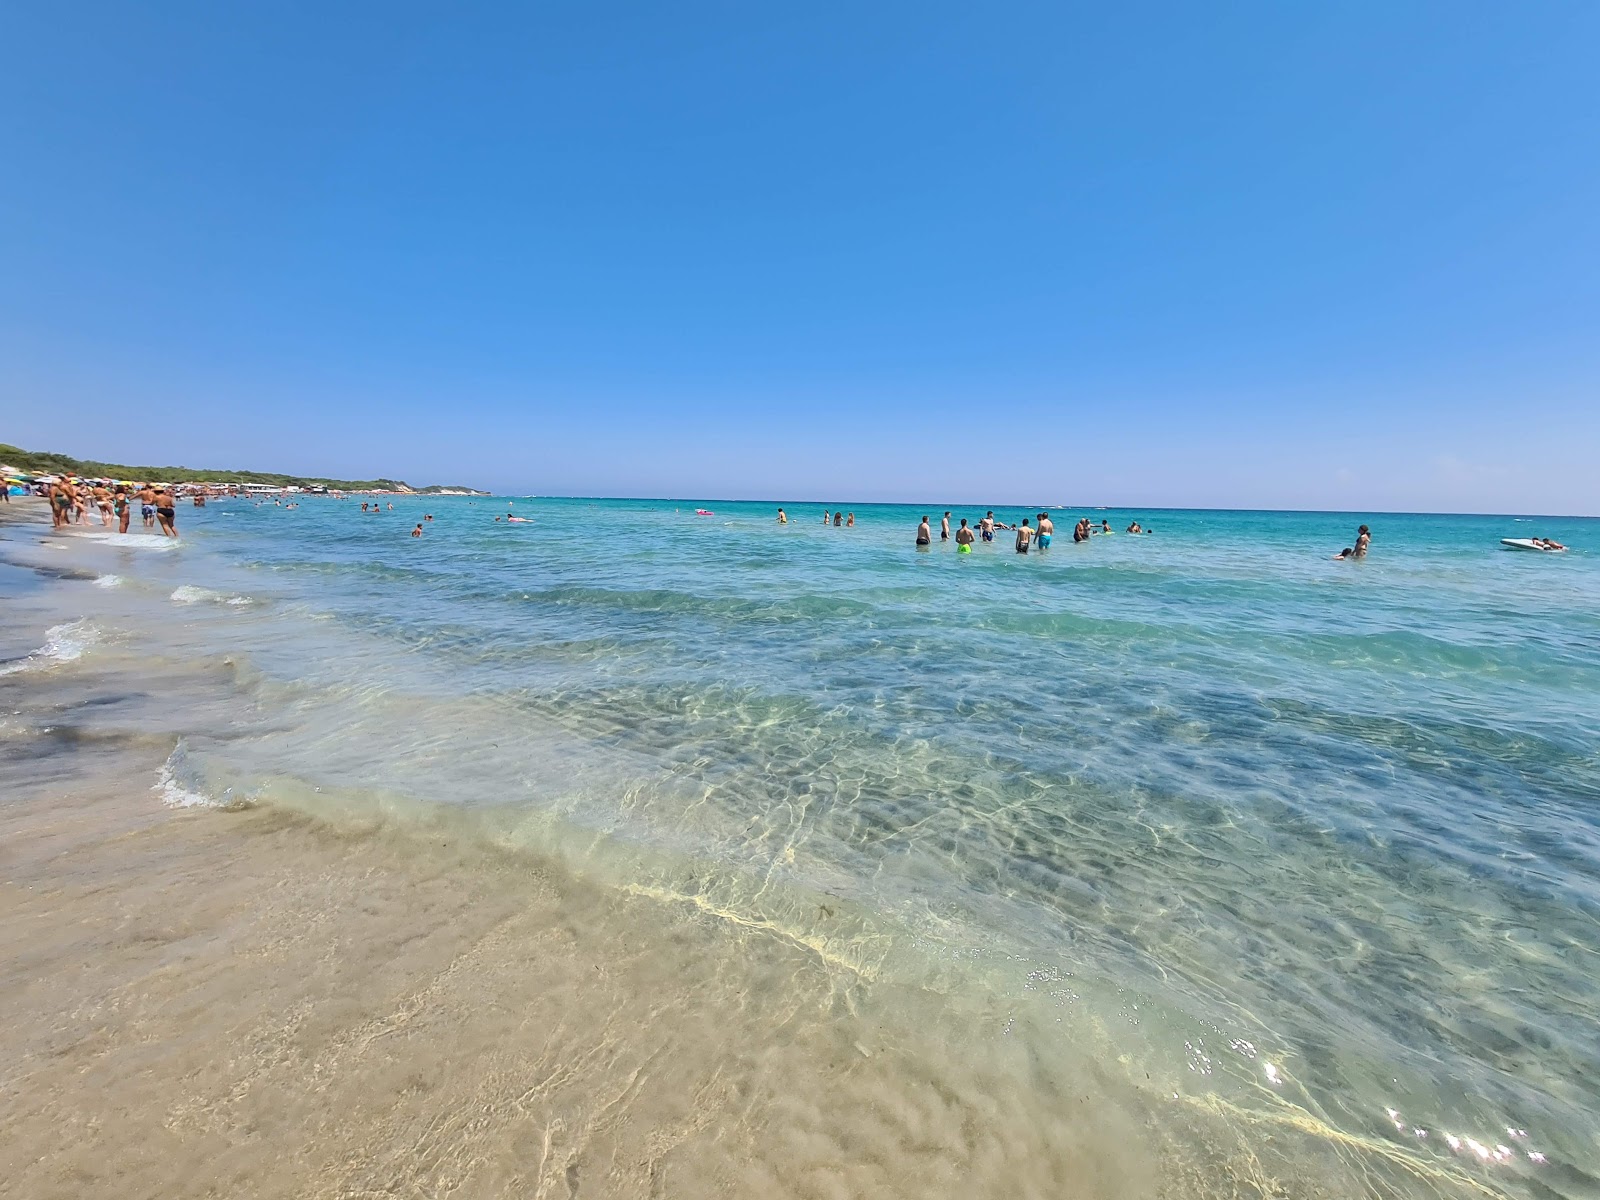 Spiaggia Laghi Alimini'in fotoğrafı parlak ince kum yüzey ile